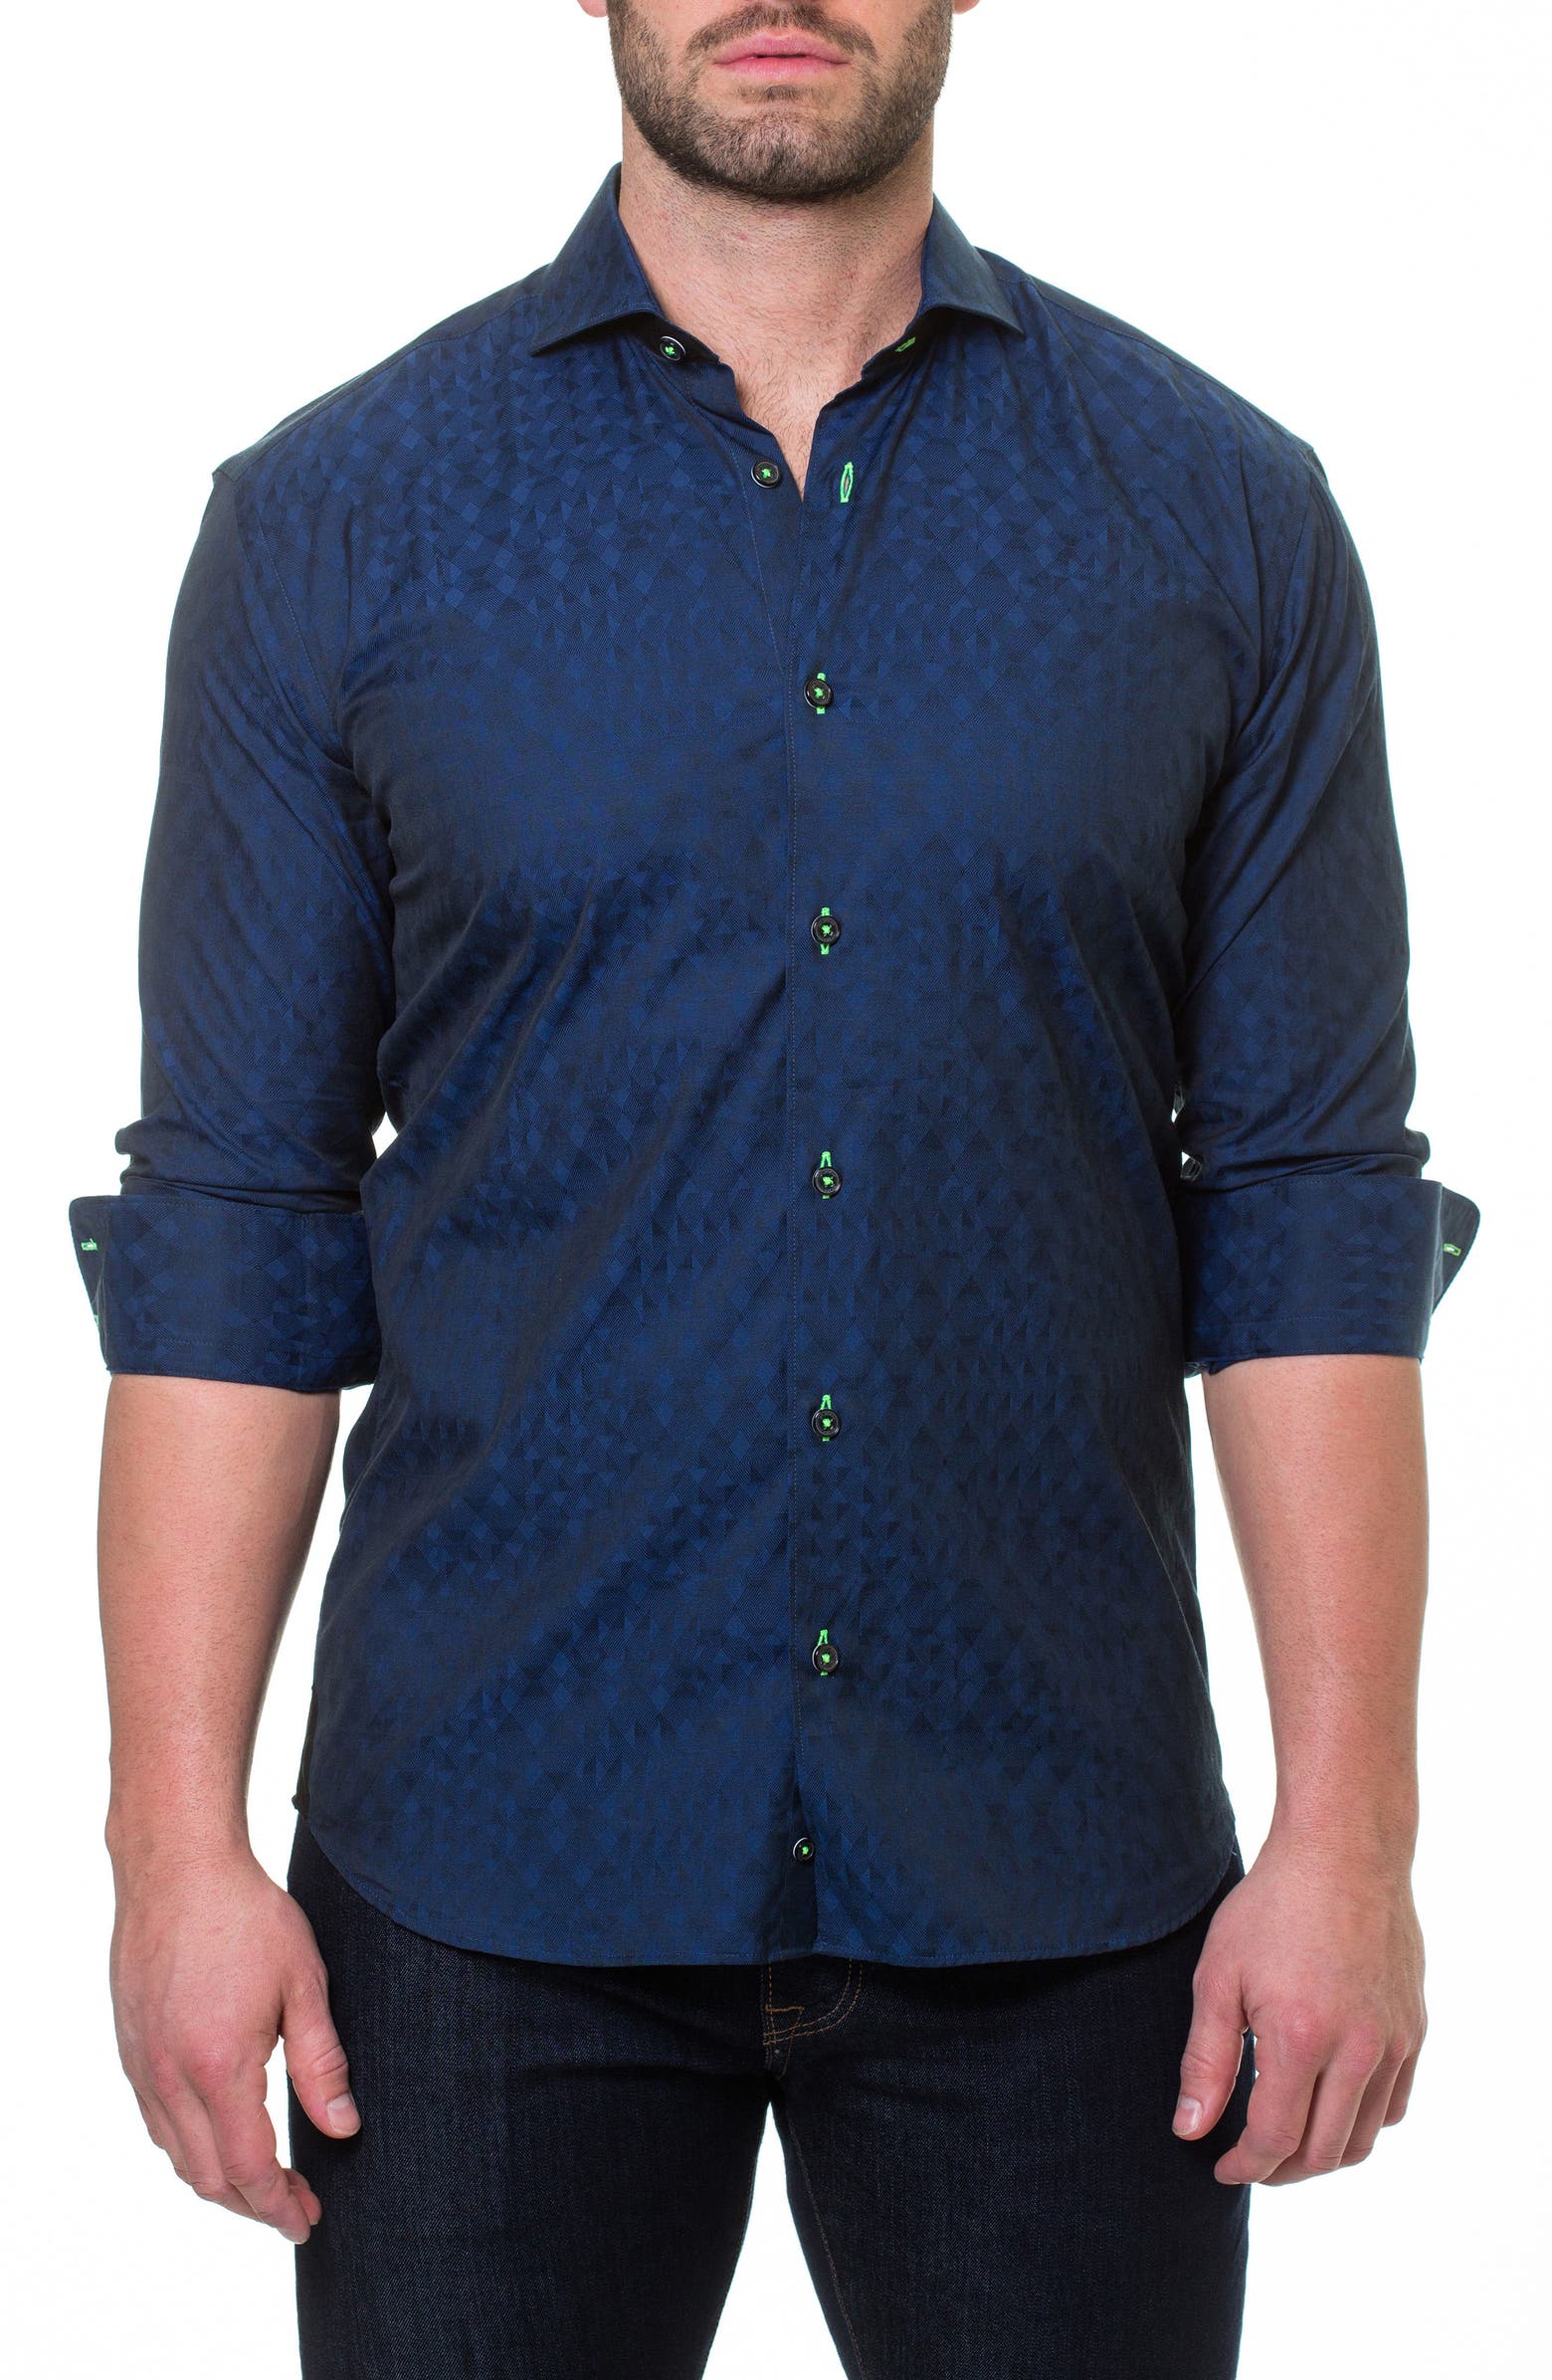 Maceoo Wall Street ABC Blue Slim Fit Sport Shirt | Nordstrom